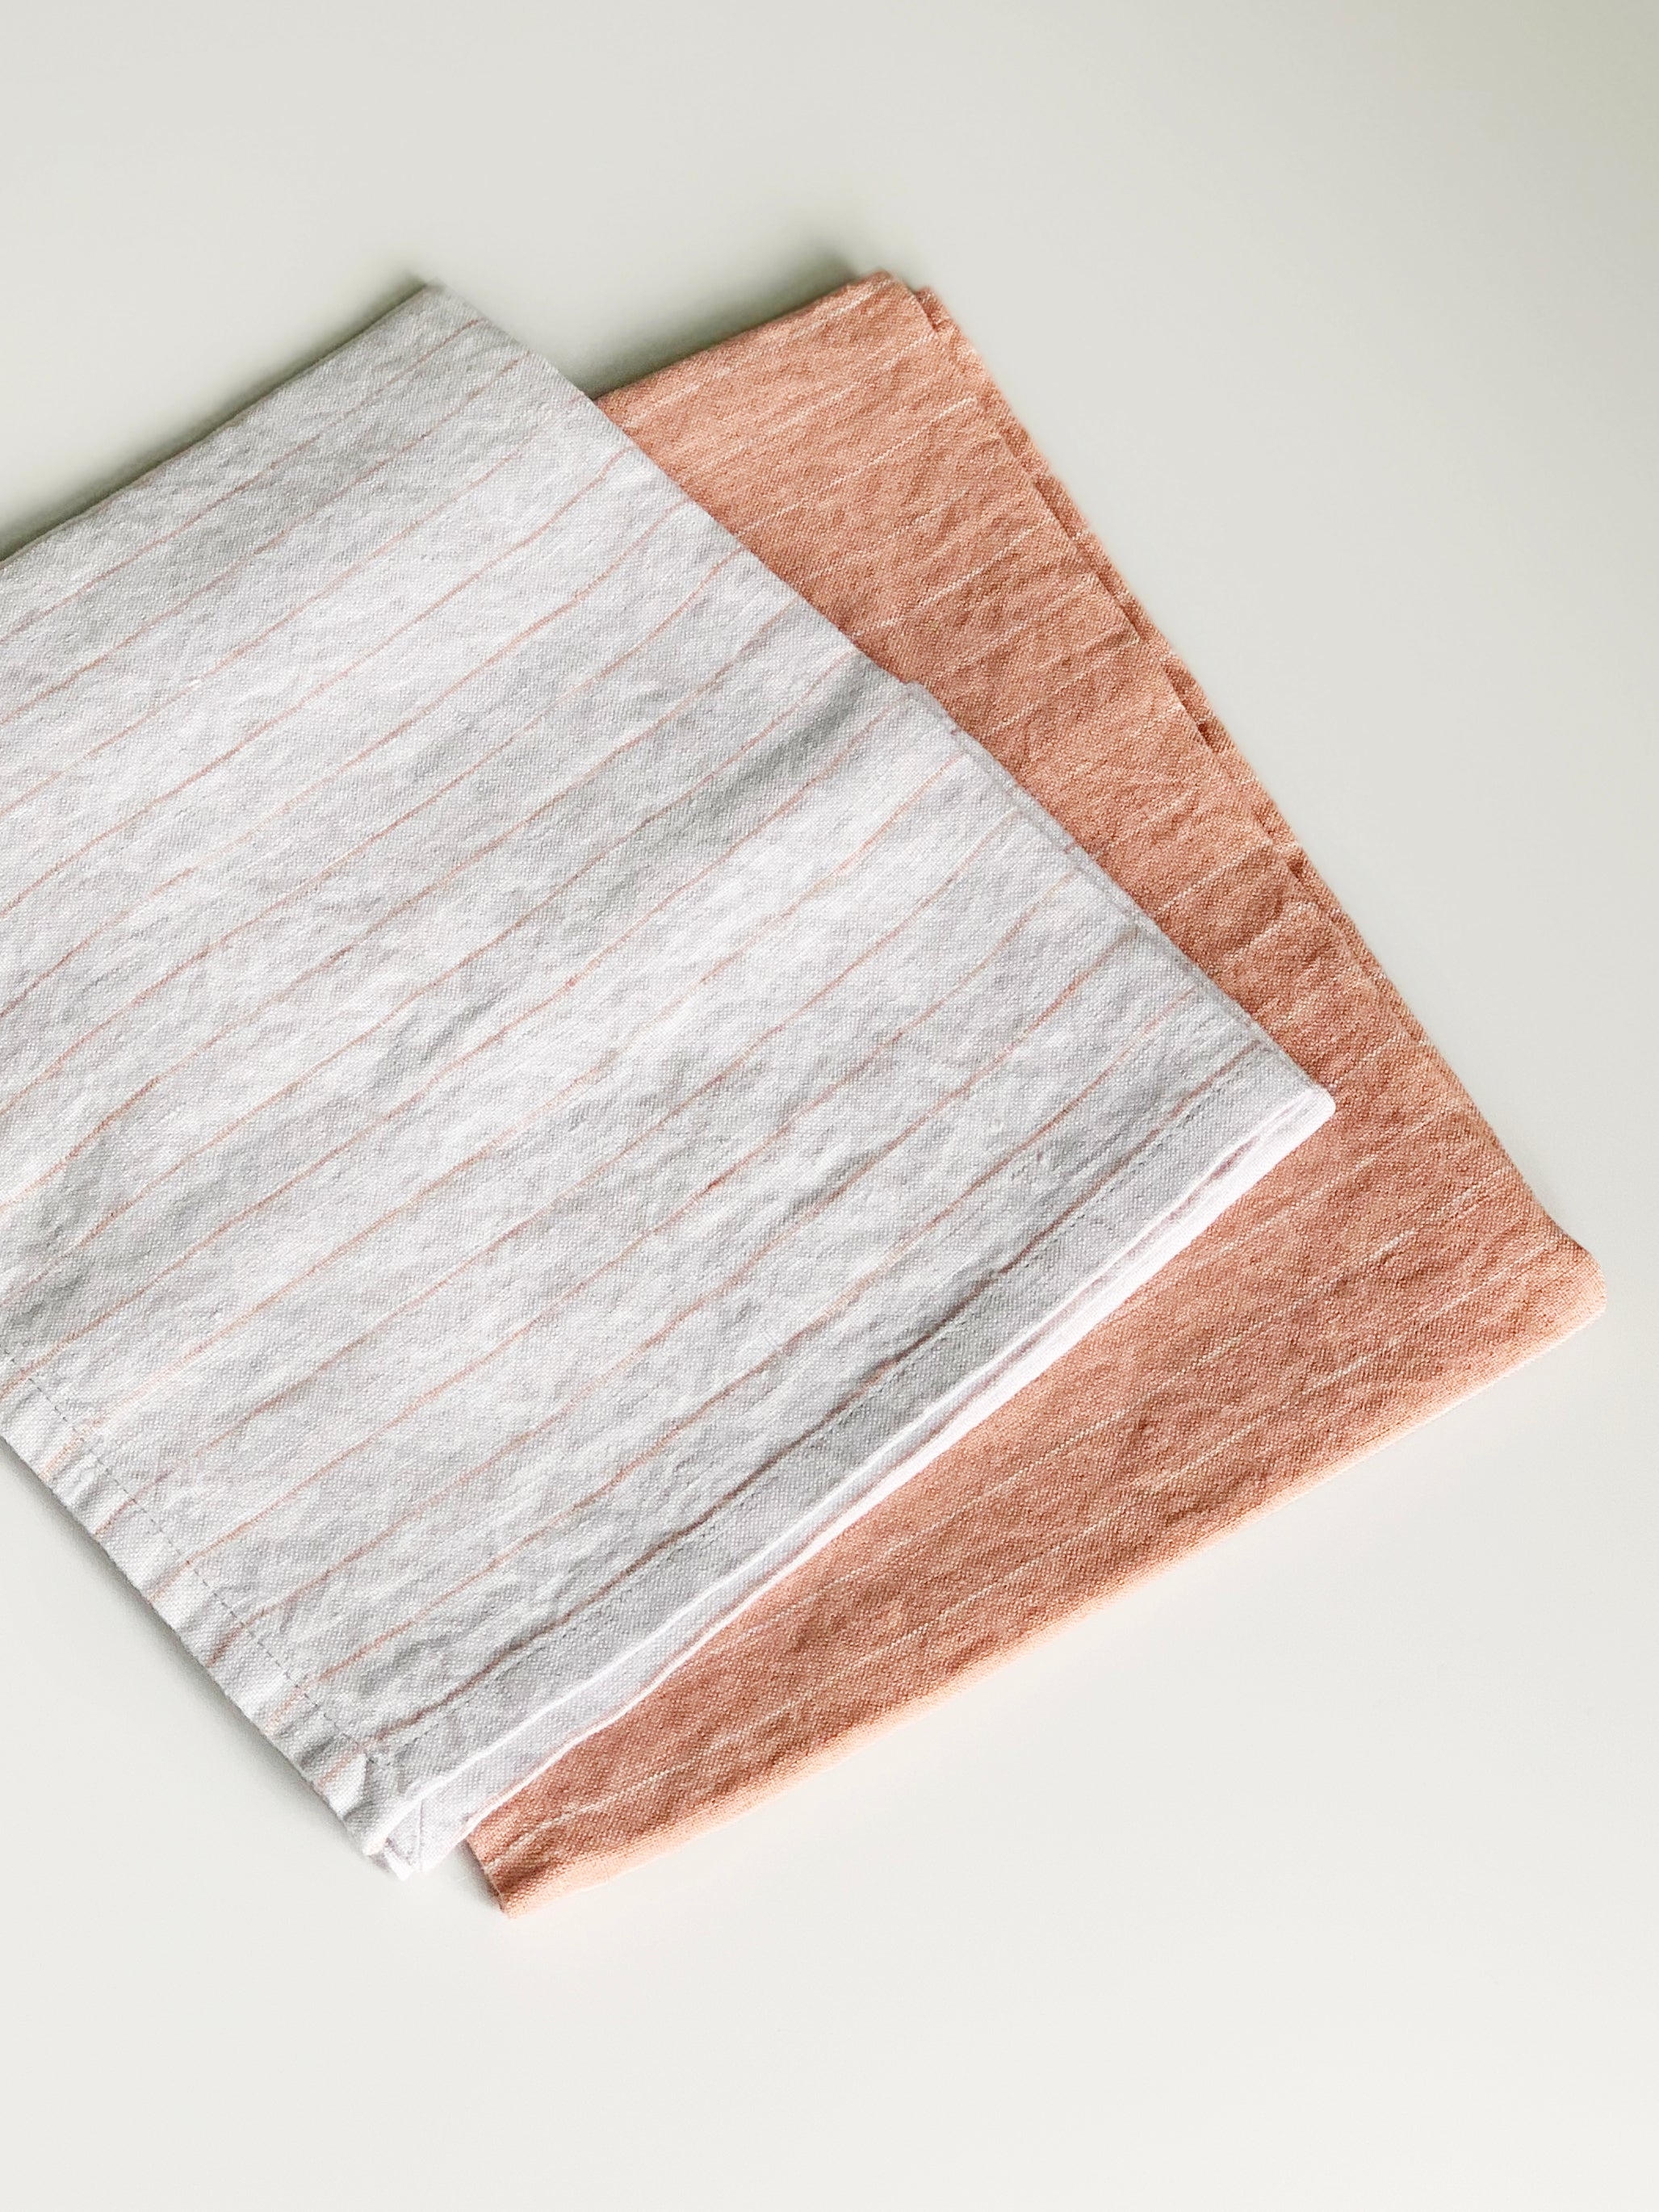 Stilleben kitchen towel terracotta/grey